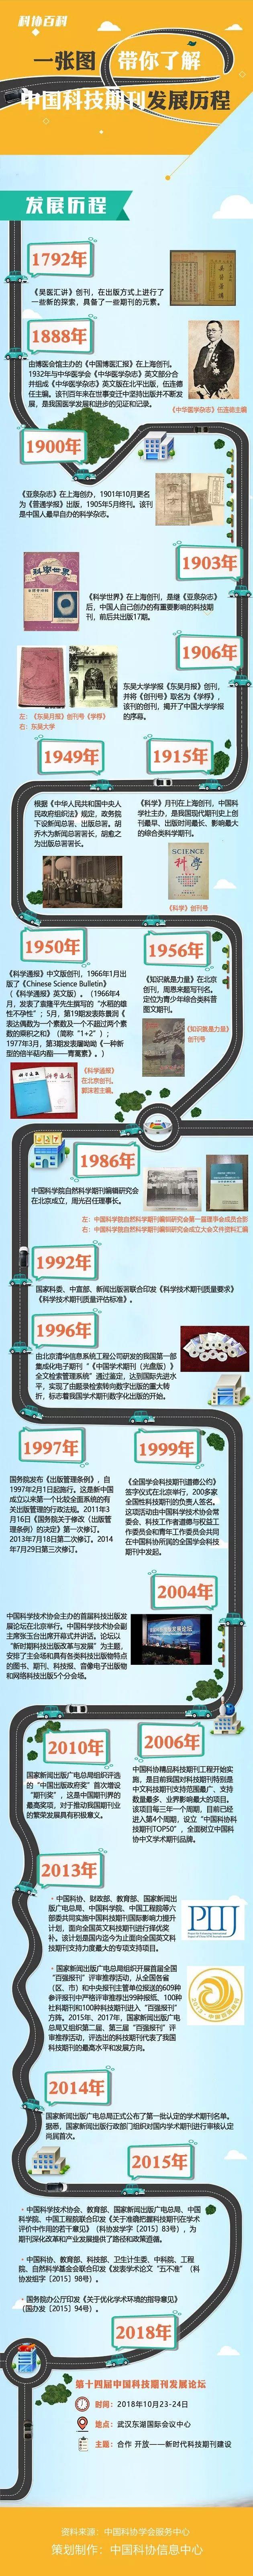 一张图带你了解中国科技期刊发展历程